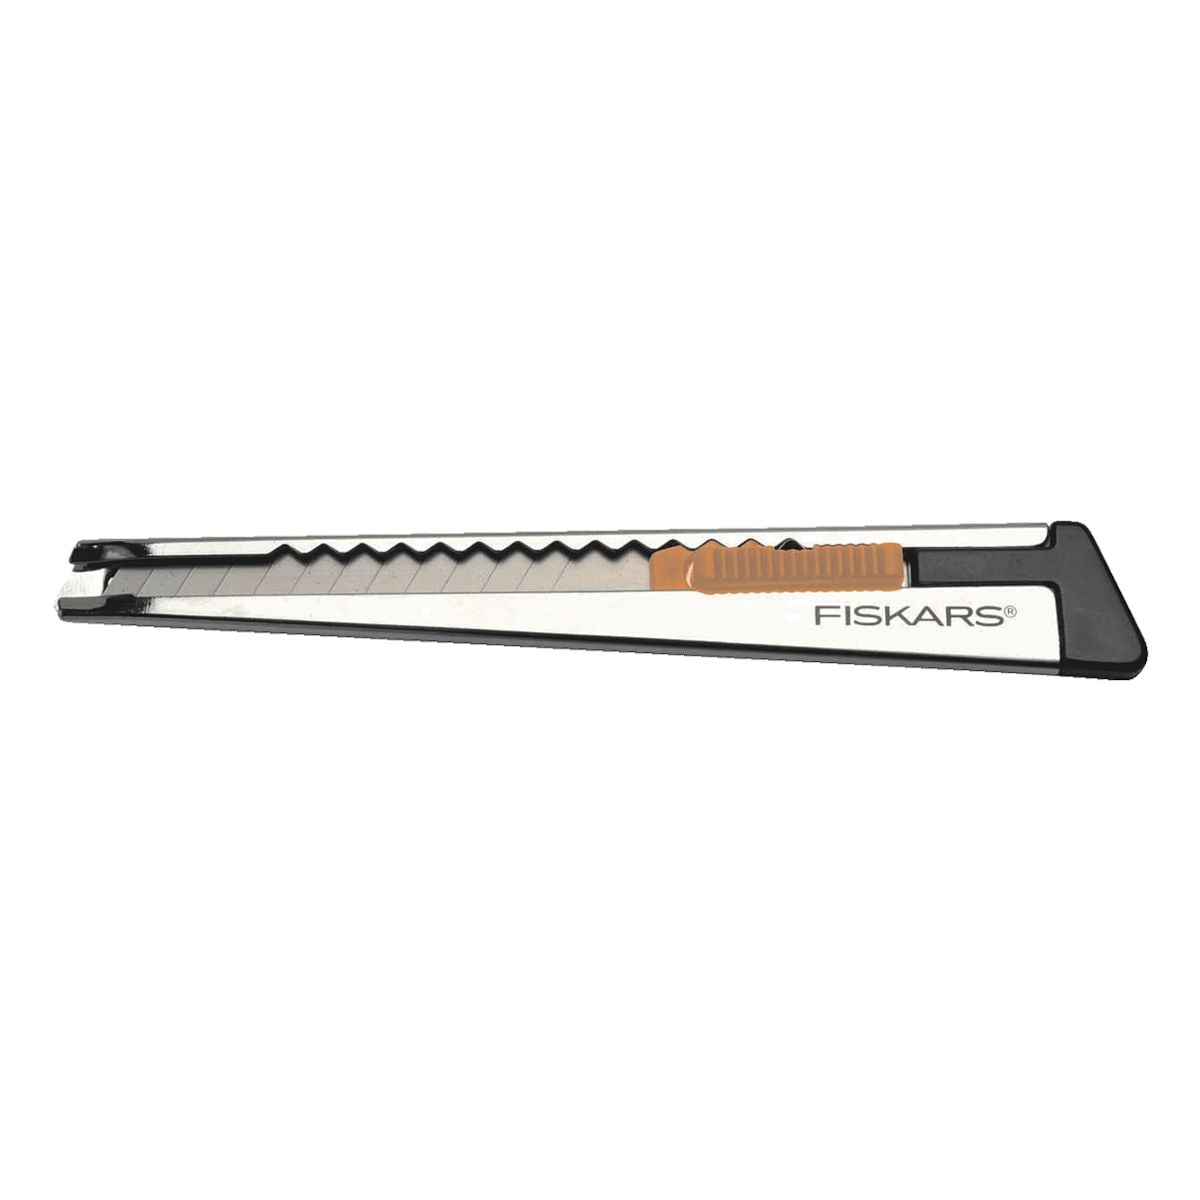 FISKARS Profi-Cuttermesser flach 9-1397 - 9 mm